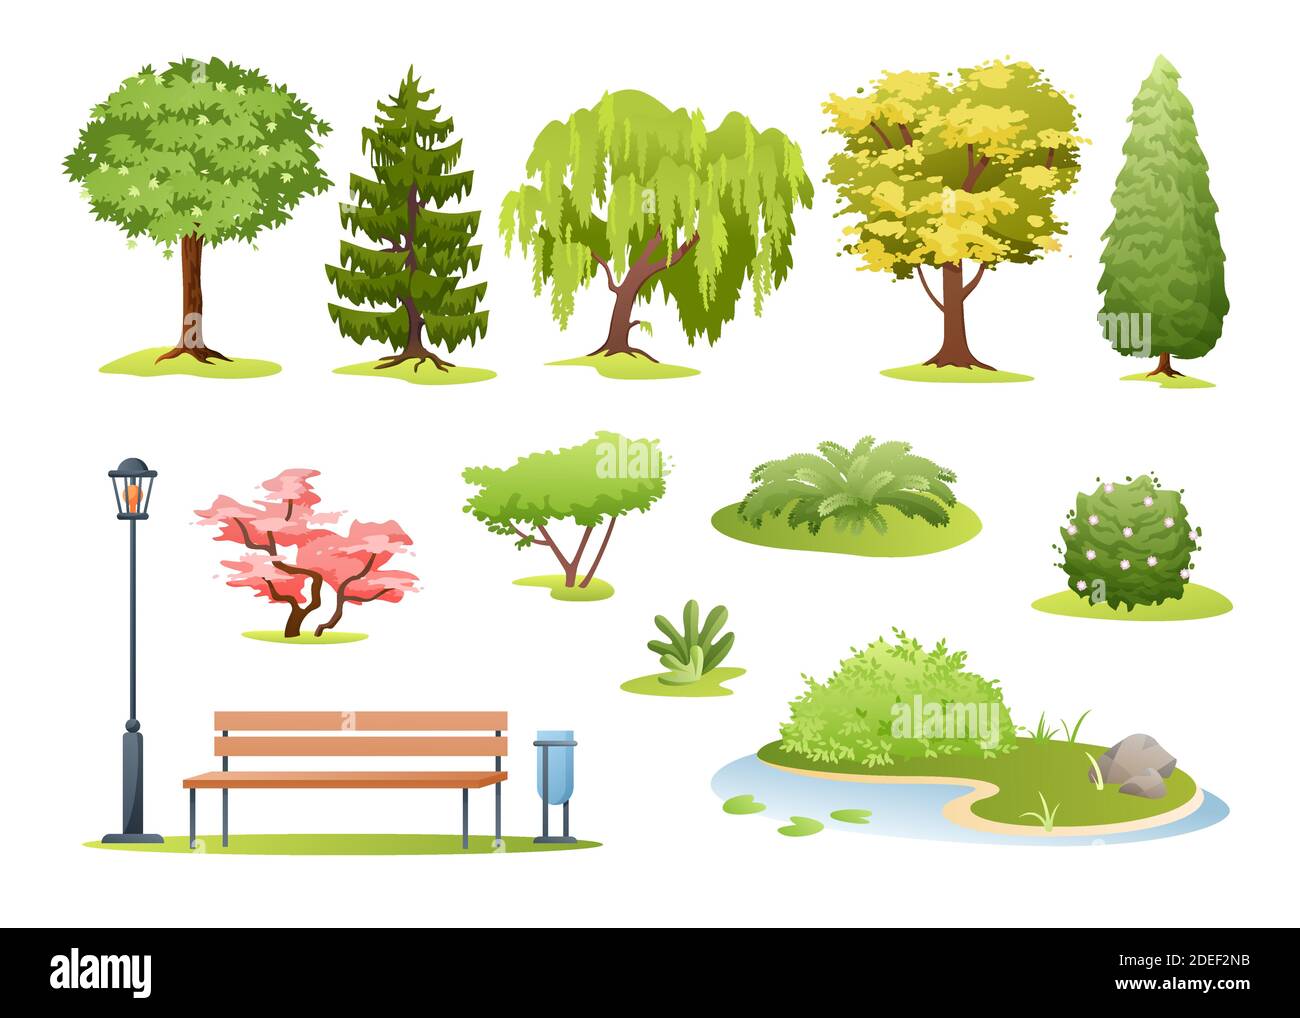 Ilustración vectorial de árboles forestales y parques. Dibujos animados varios árboles verde de verano caducifolios y perennes, arbustos con flores, helechos y parque o jardín Ilustración del Vector